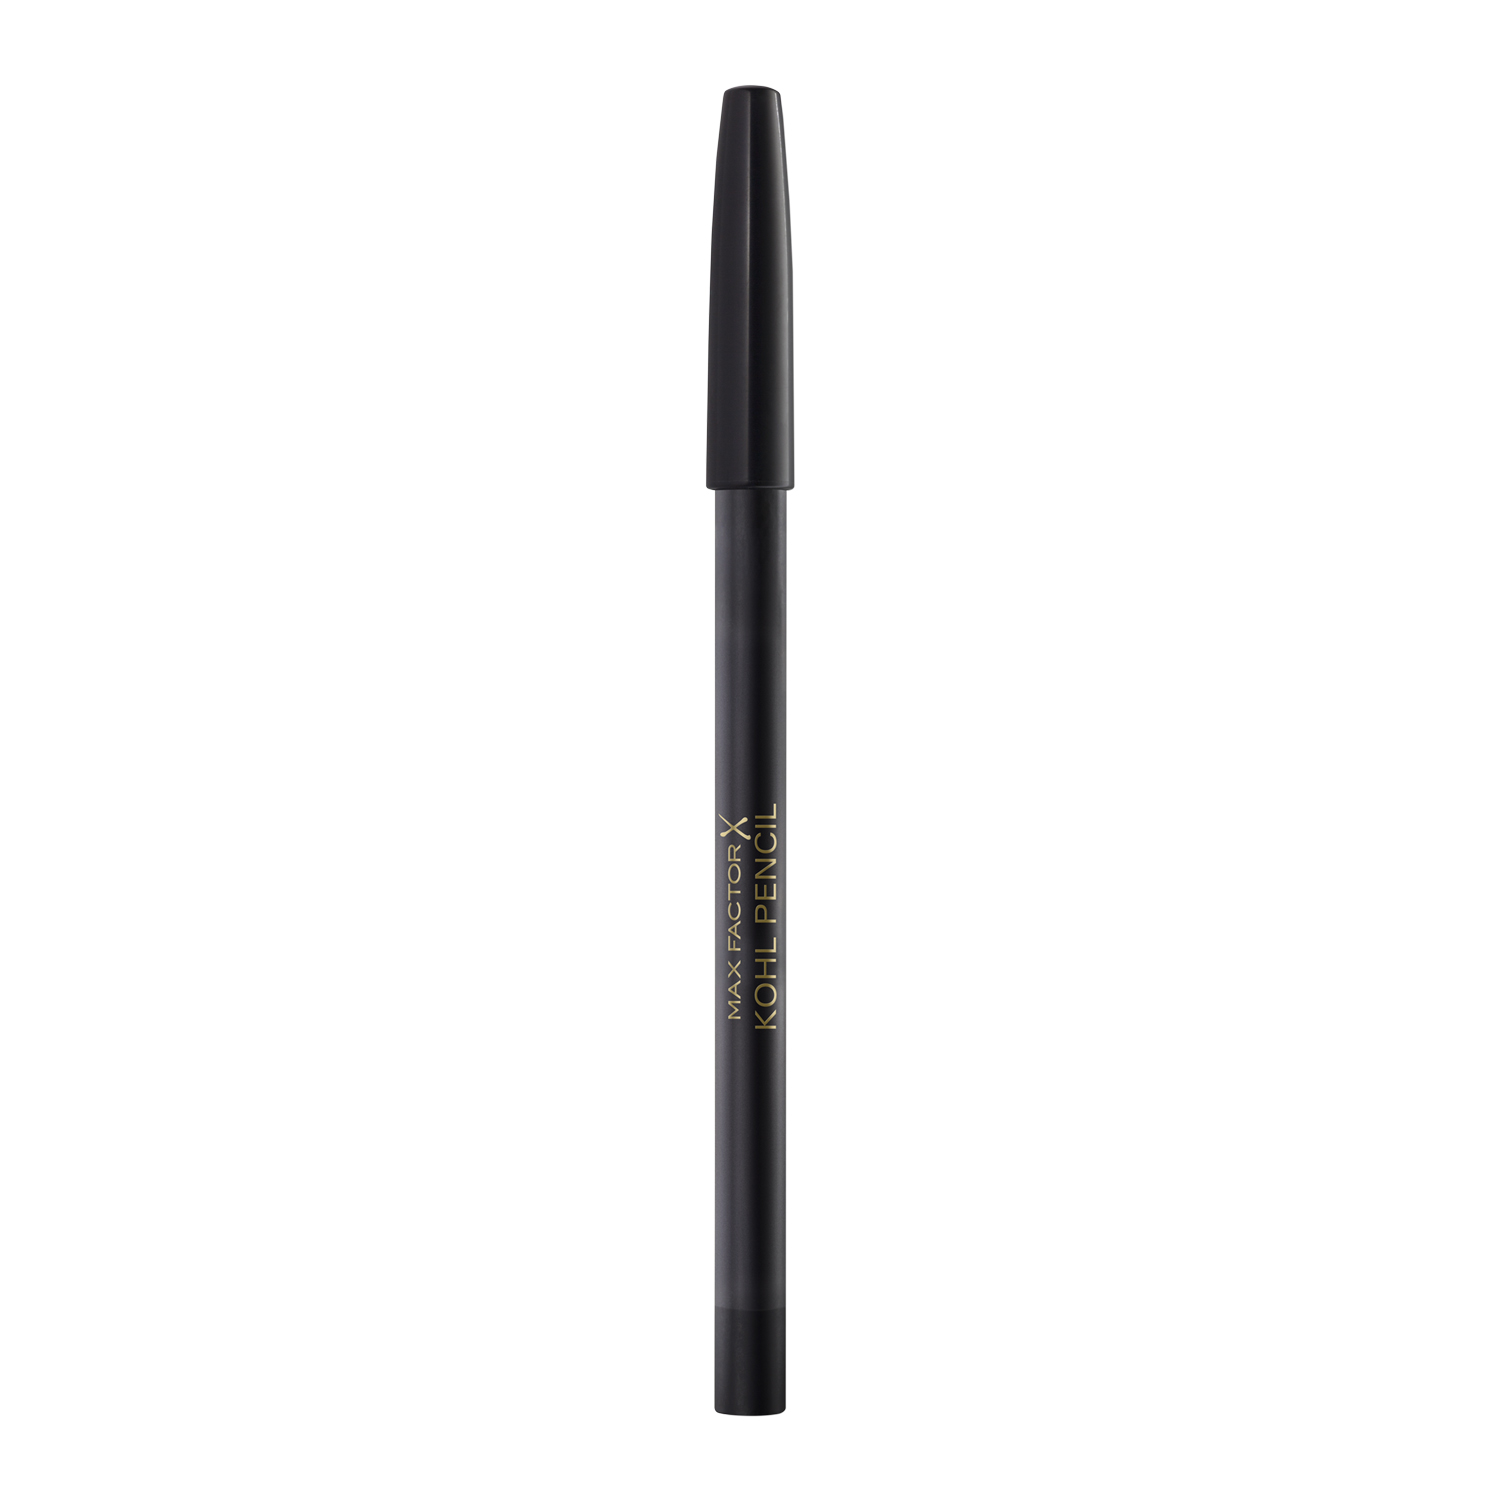 Олівець для очей Max Factor Kohl Pencil, відтінок 20 (Black), 1,2 г (8000008745750) - фото 4